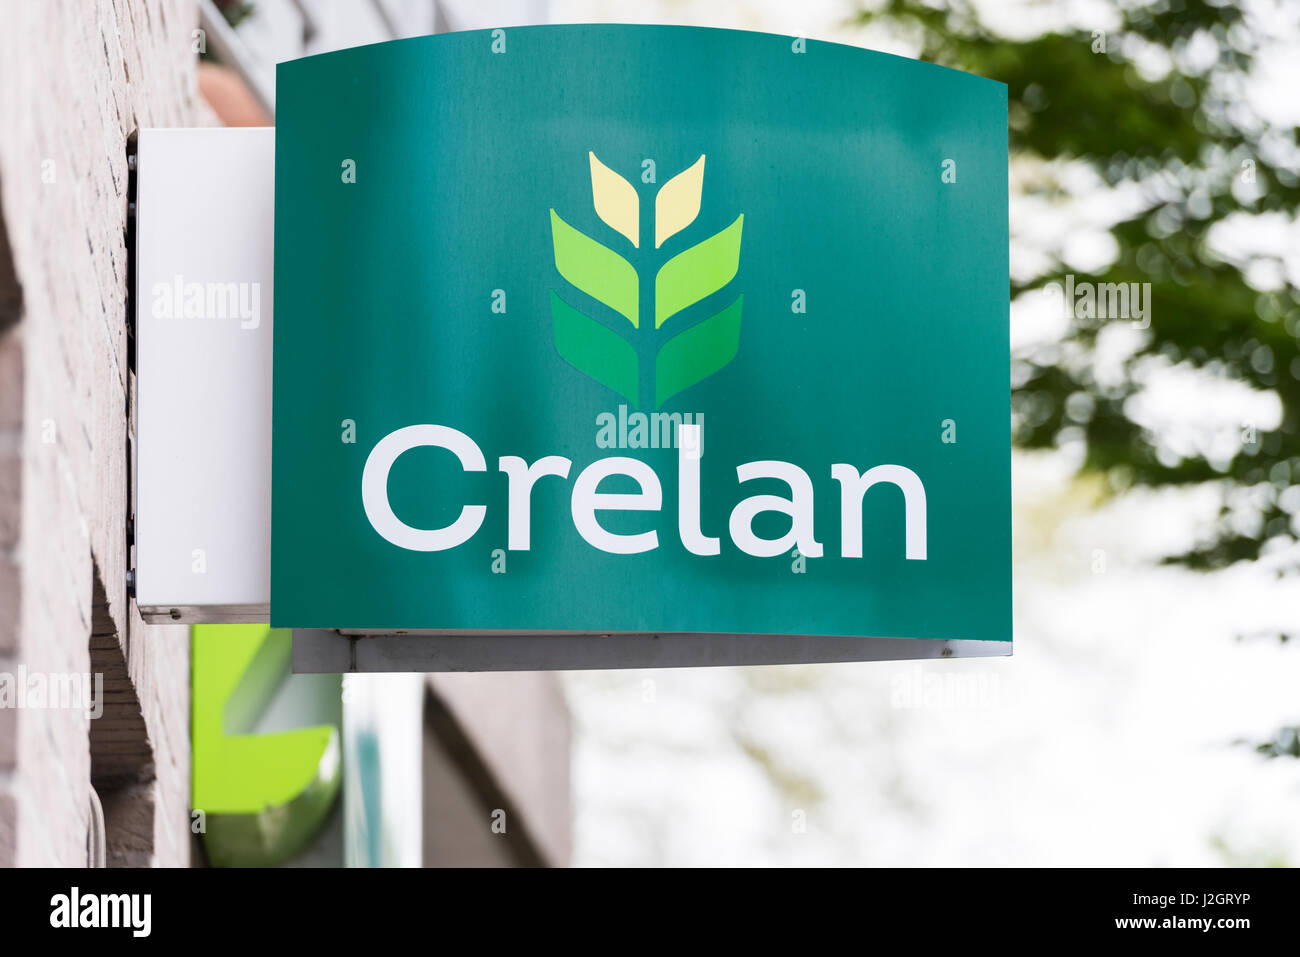 Crelan Belgian bank logo and branch Stock Photo